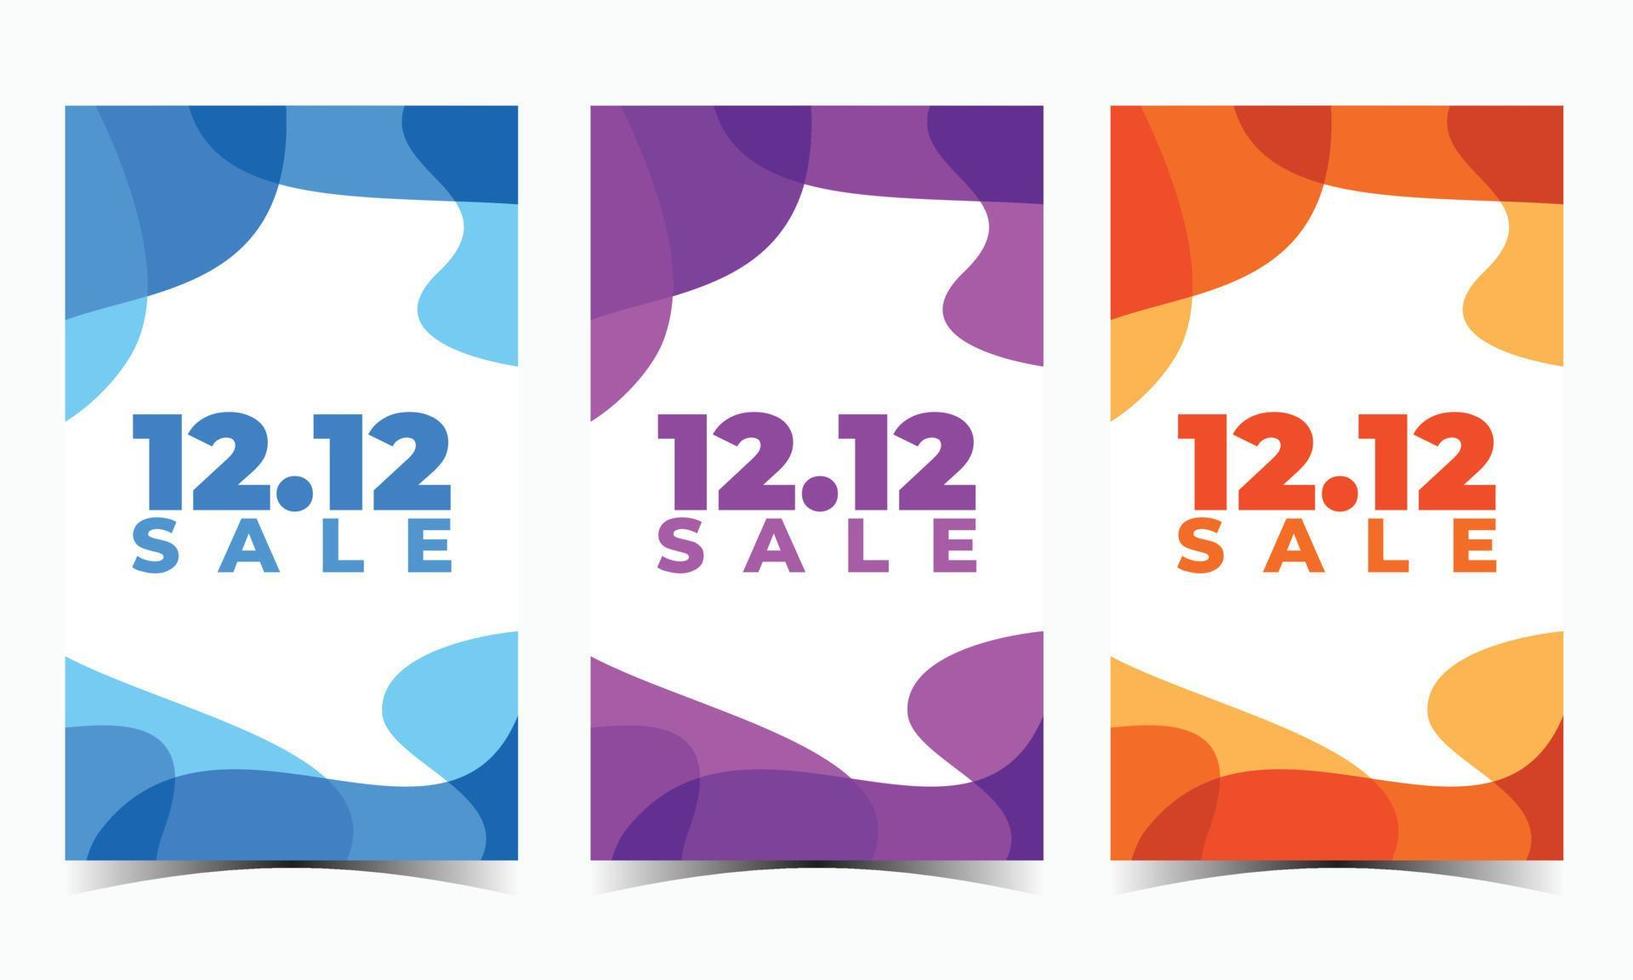 Desconto especial 1212 mega banner de modelo de venda com espaço em branco  para venda de produtos com design de fundo preto gradiente abstrato